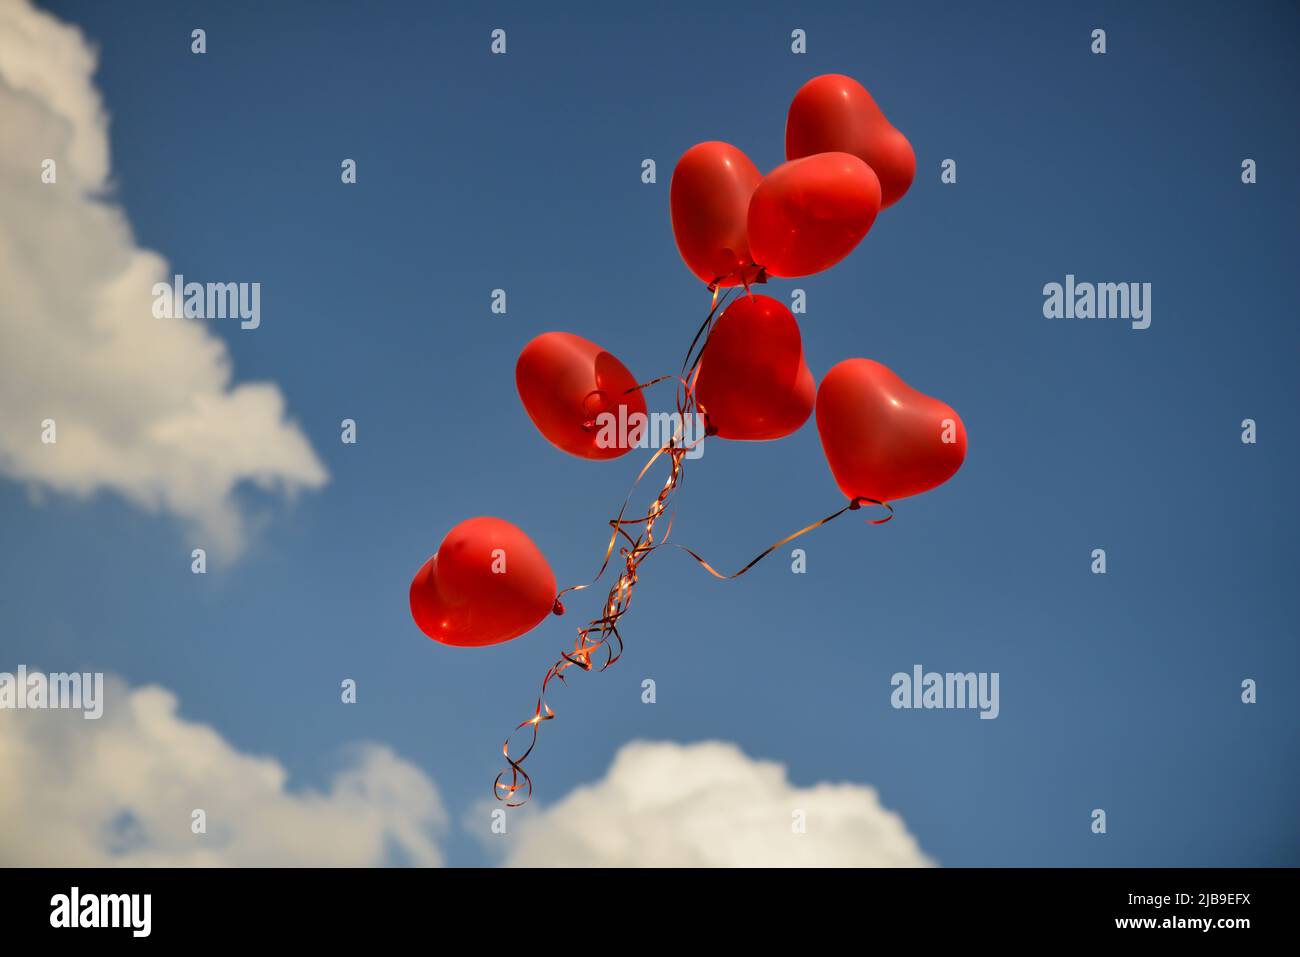 Globos en forma de corazón rojo flotando en el cielo el símbolo del día de San Valentín. Foto de stock